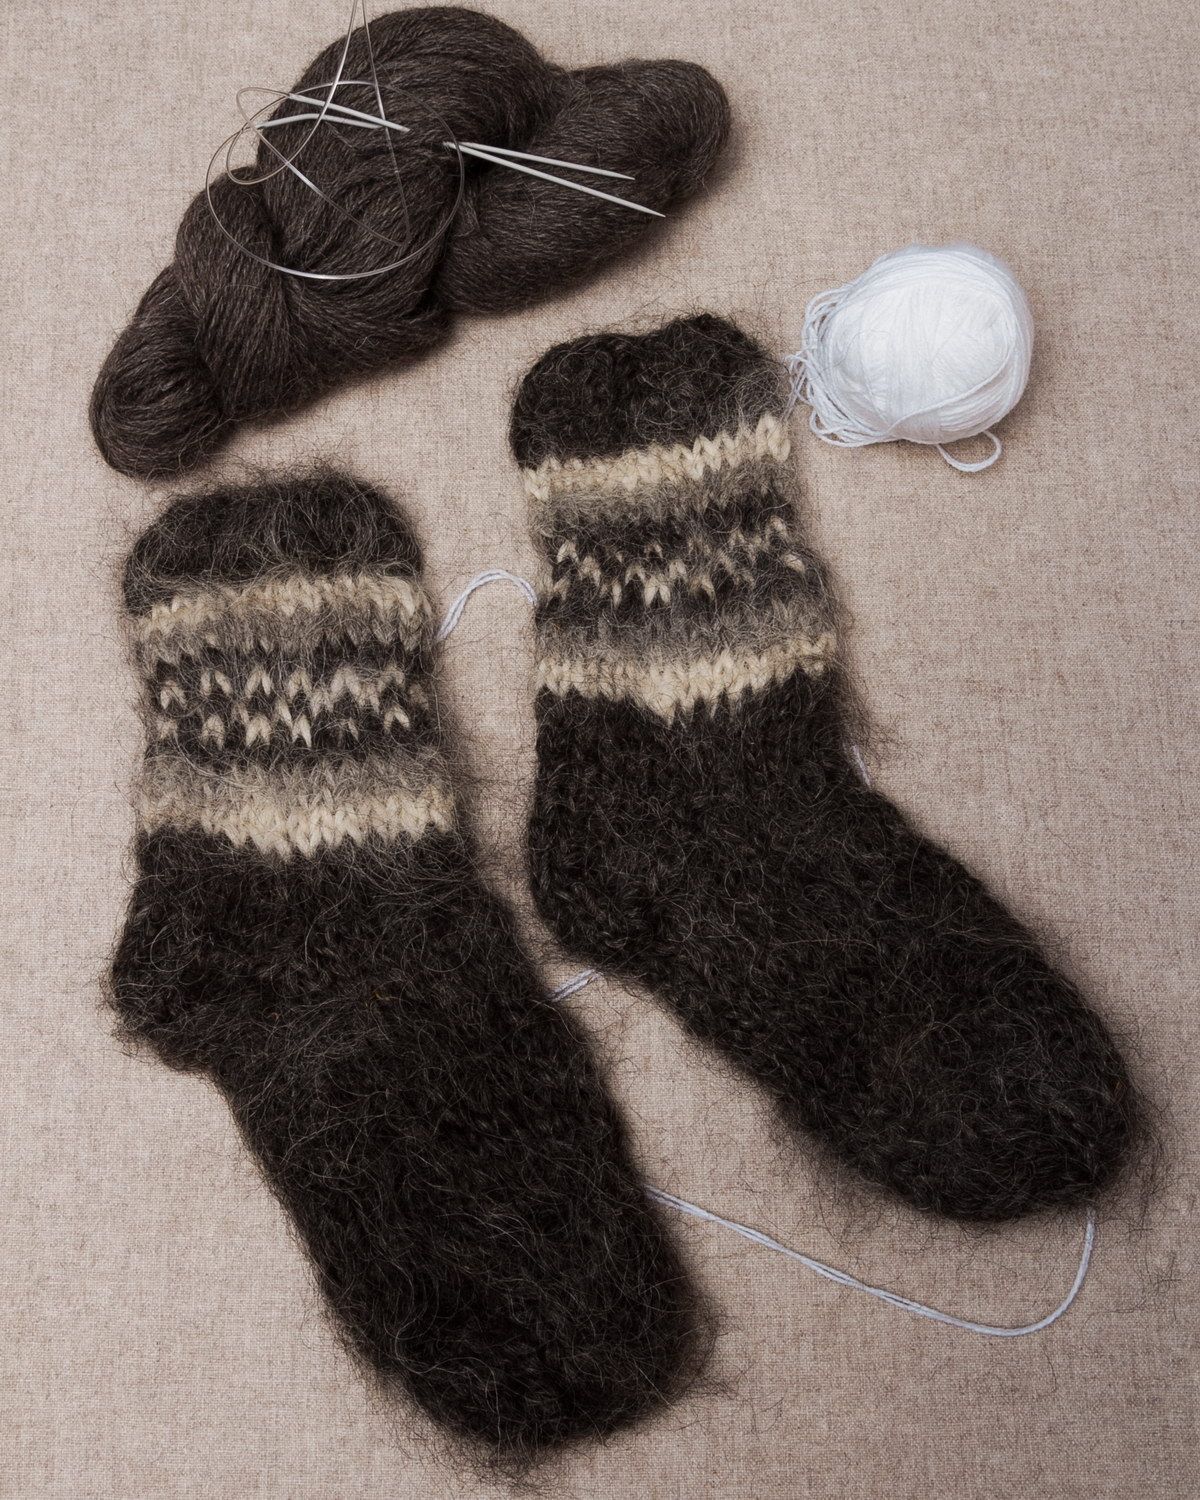 Men's hand knitted socks photo 1